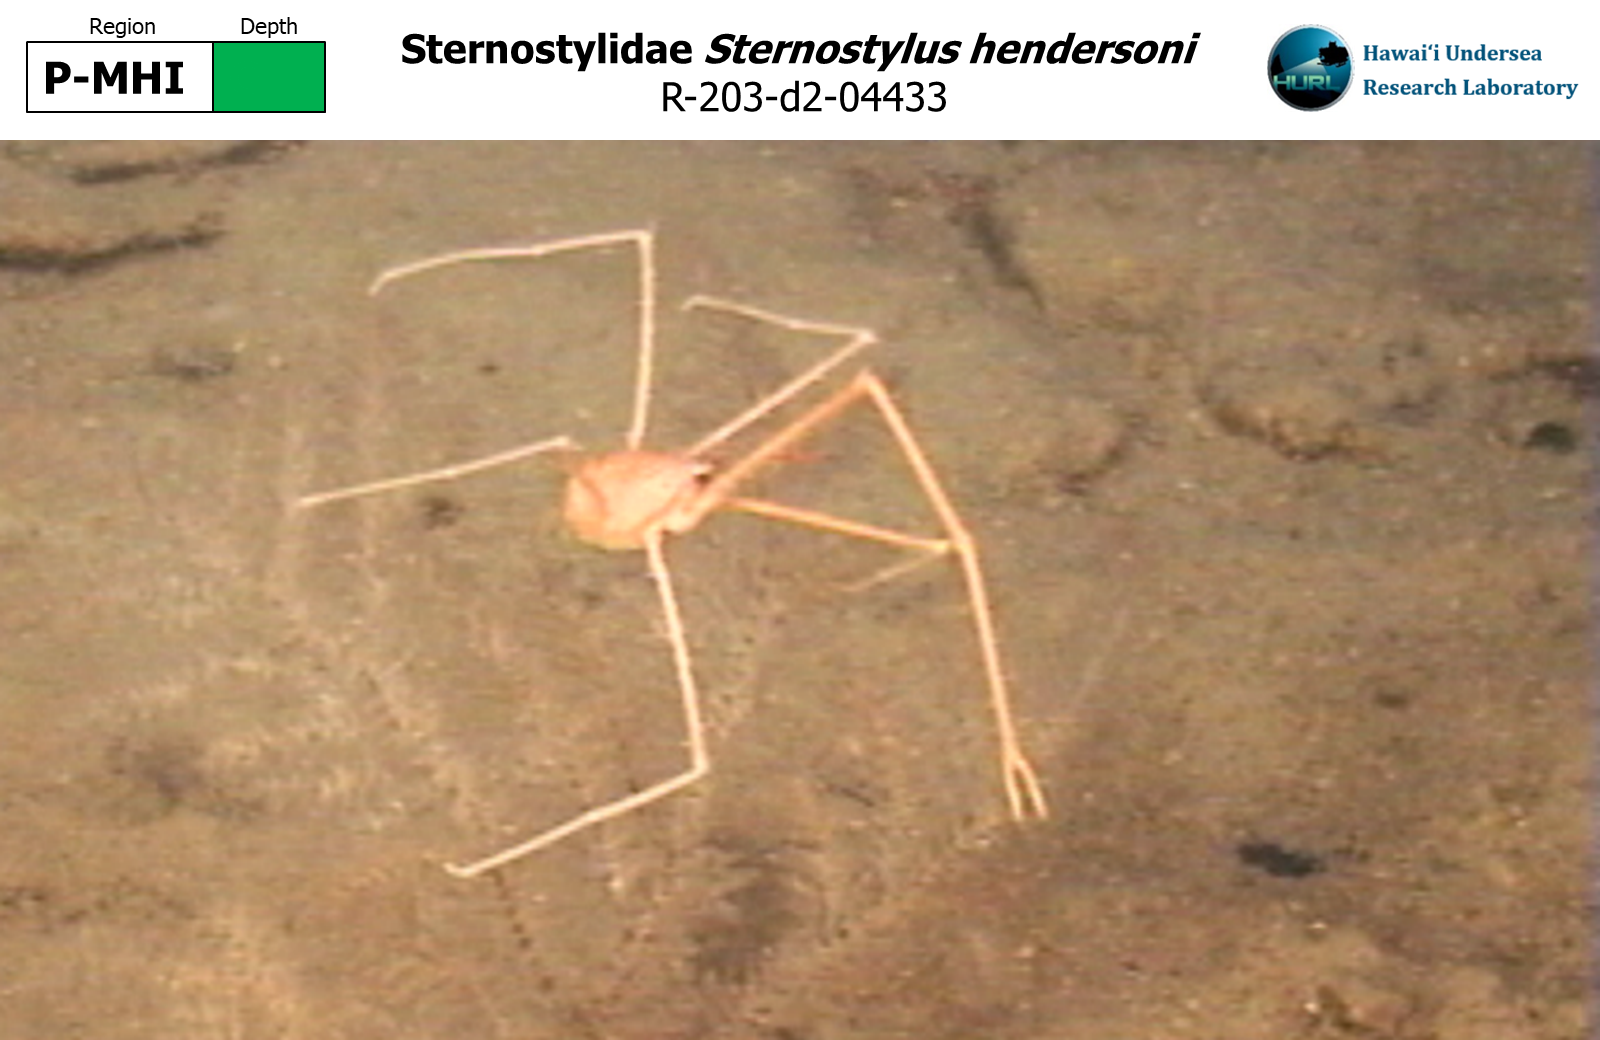 Sternostylus hendersoni